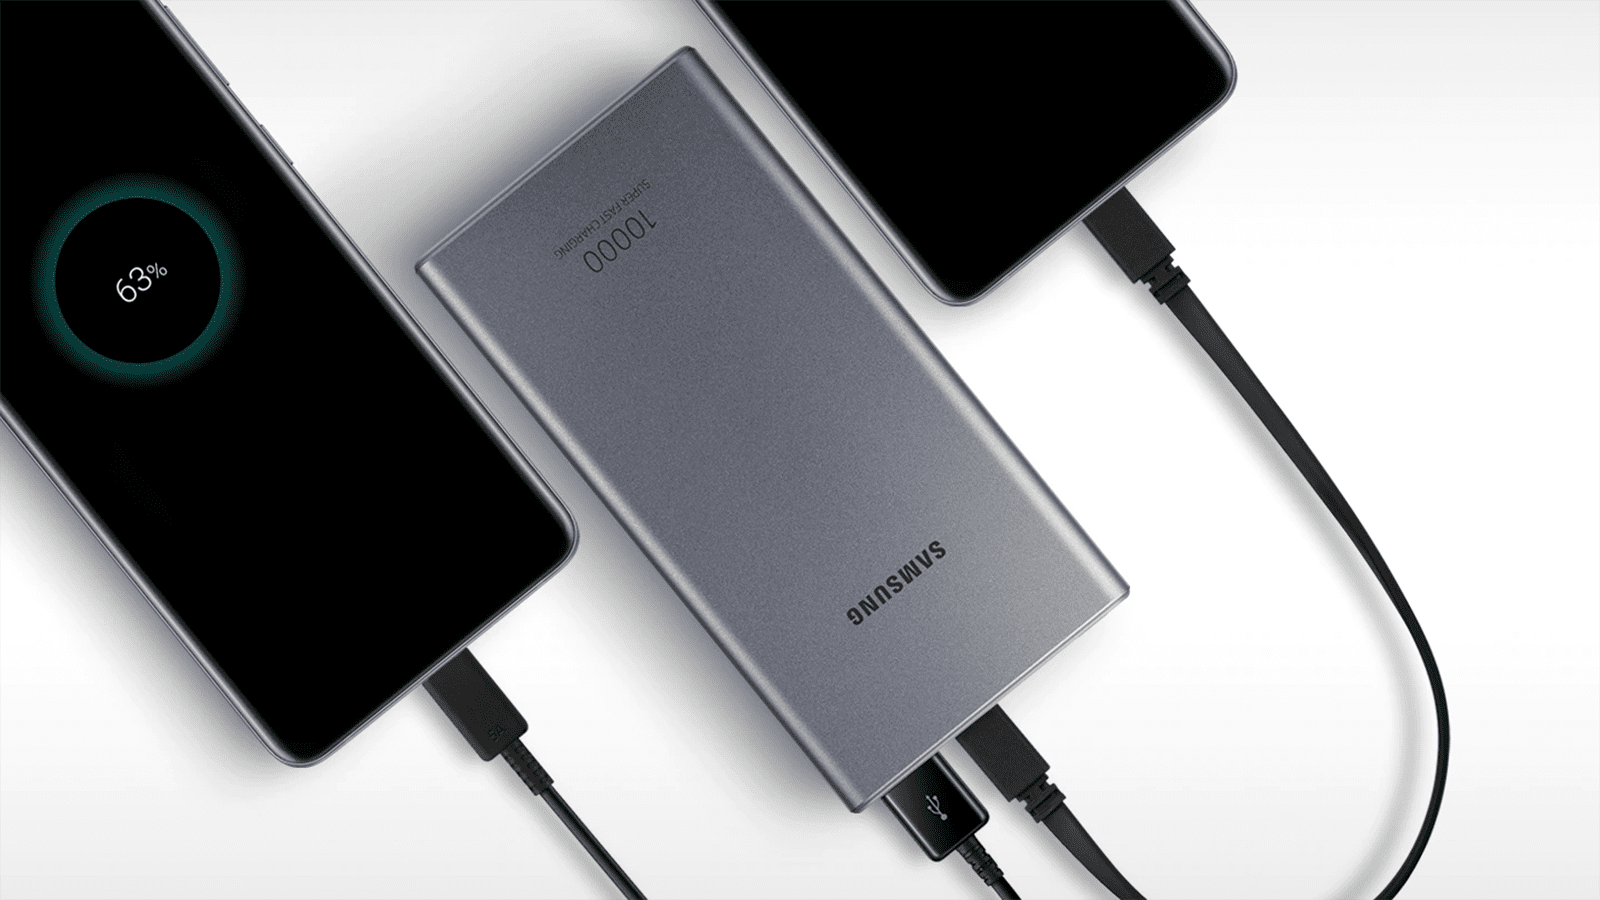 Intresserad av Samsung externa batterier för mindre än 10 €?